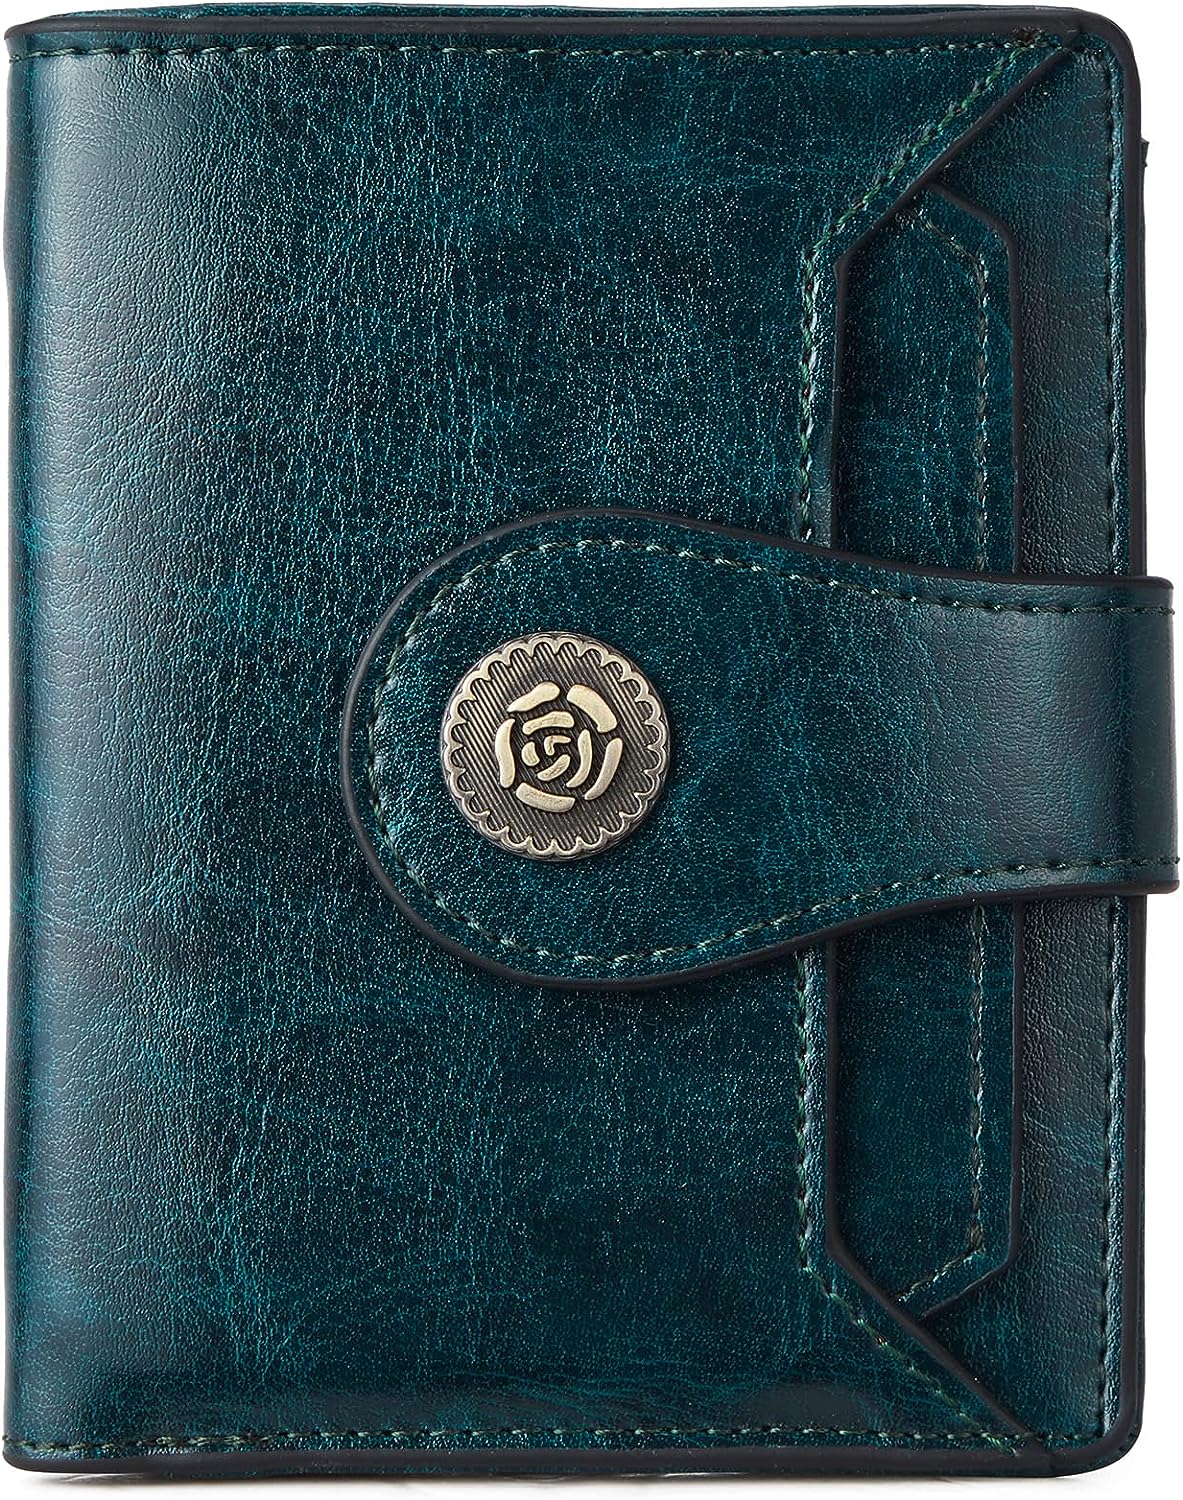 BOSTANTEN Leather Wallets for Women RFID Blocking Zipper Pocket Small  Bifold Wallet Card Case